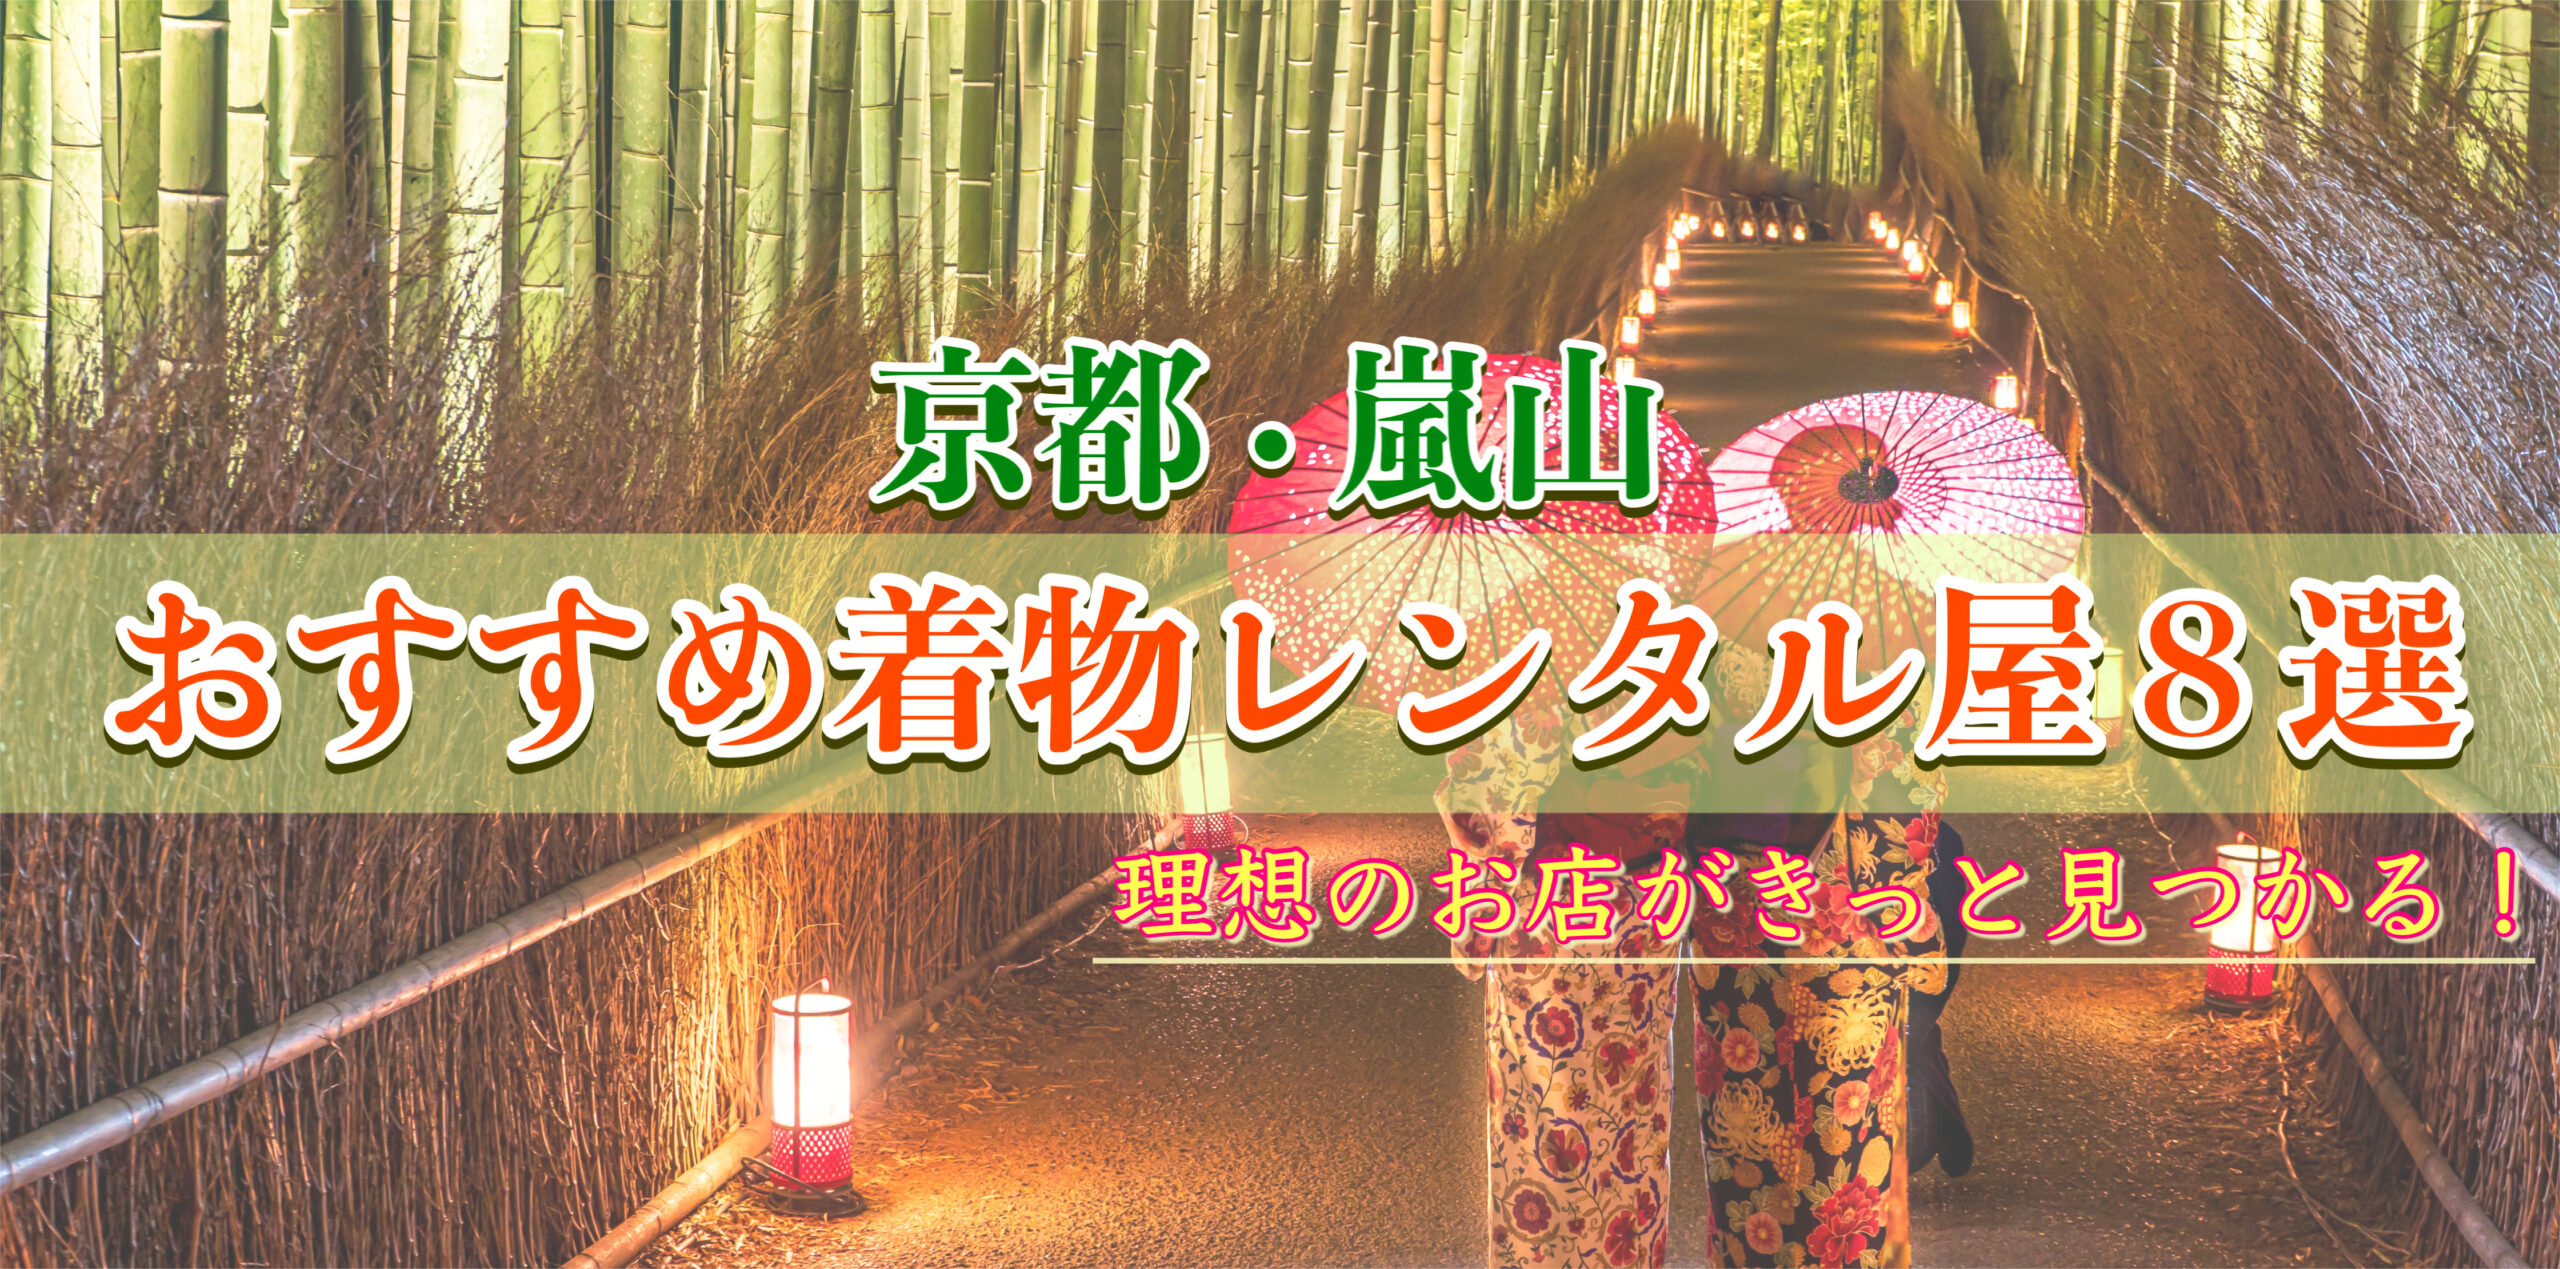 京都・嵐山-人気のおすすめ着物レンタル店_かわいいレースレトロ・大人なアンティーク-カップル・女子旅・安い学割